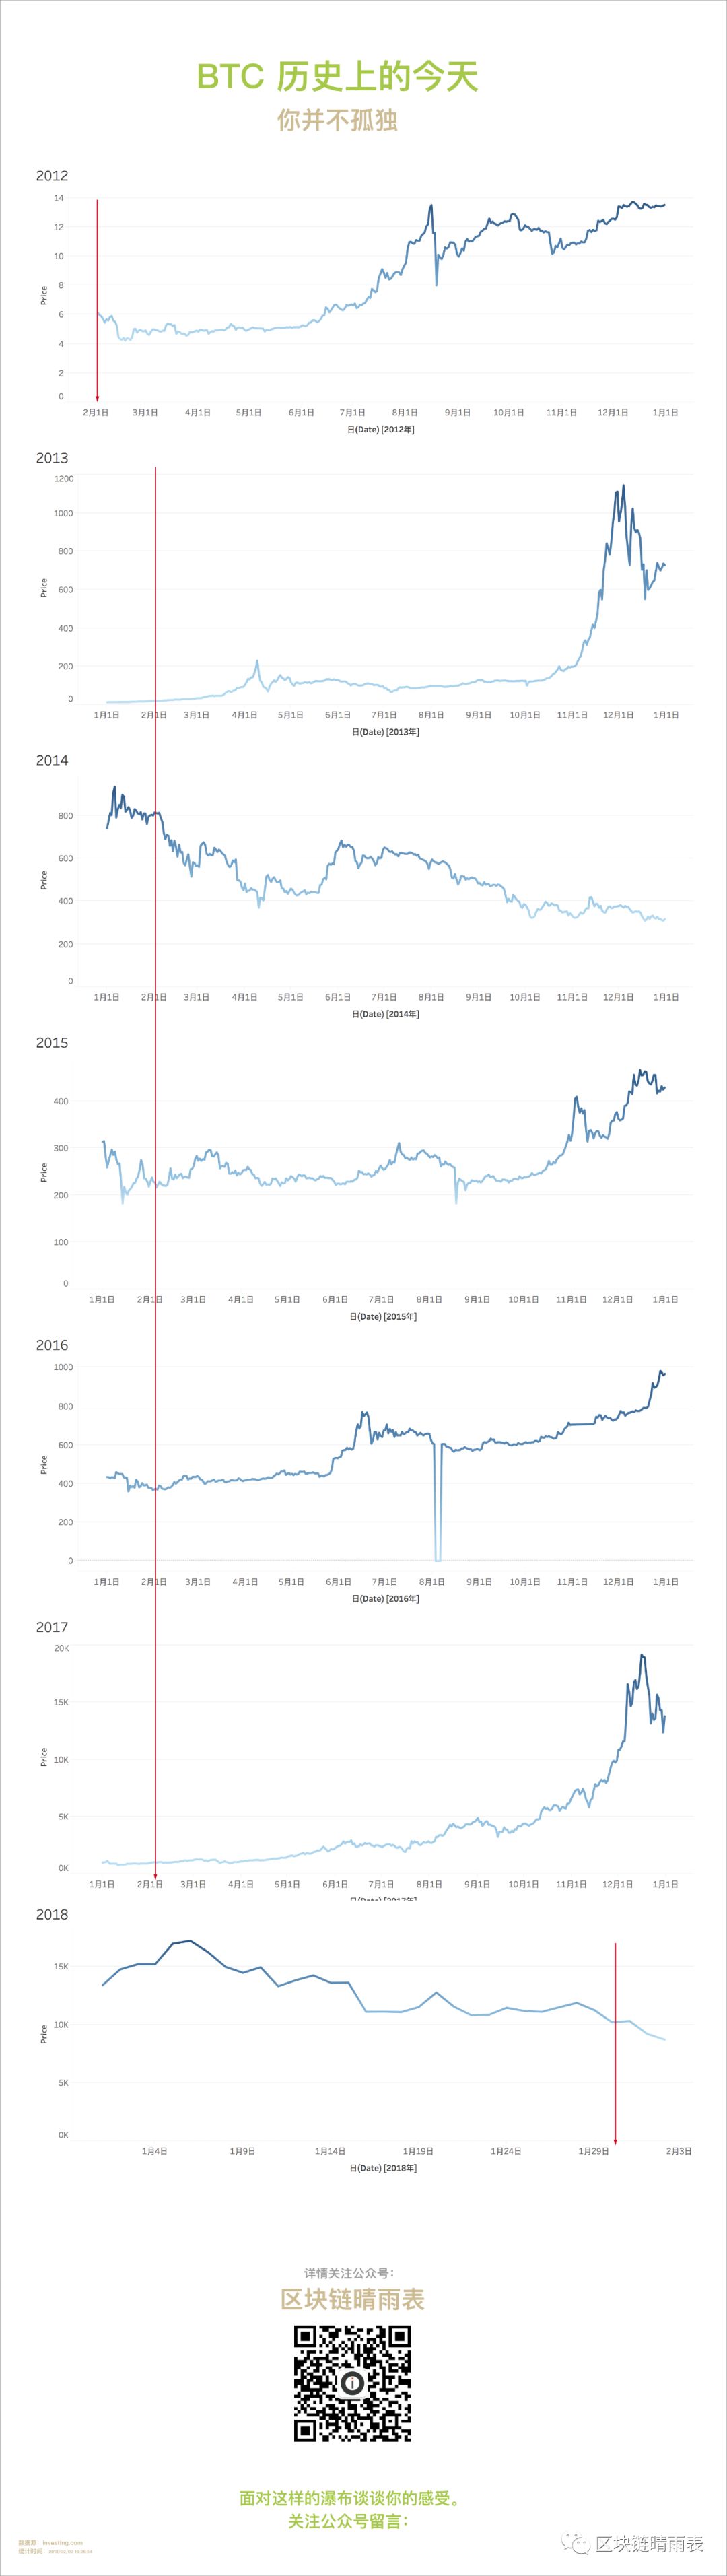 比特币历史价格走势图_比特币最全历史价格明细_比特币历史价格走势图行情